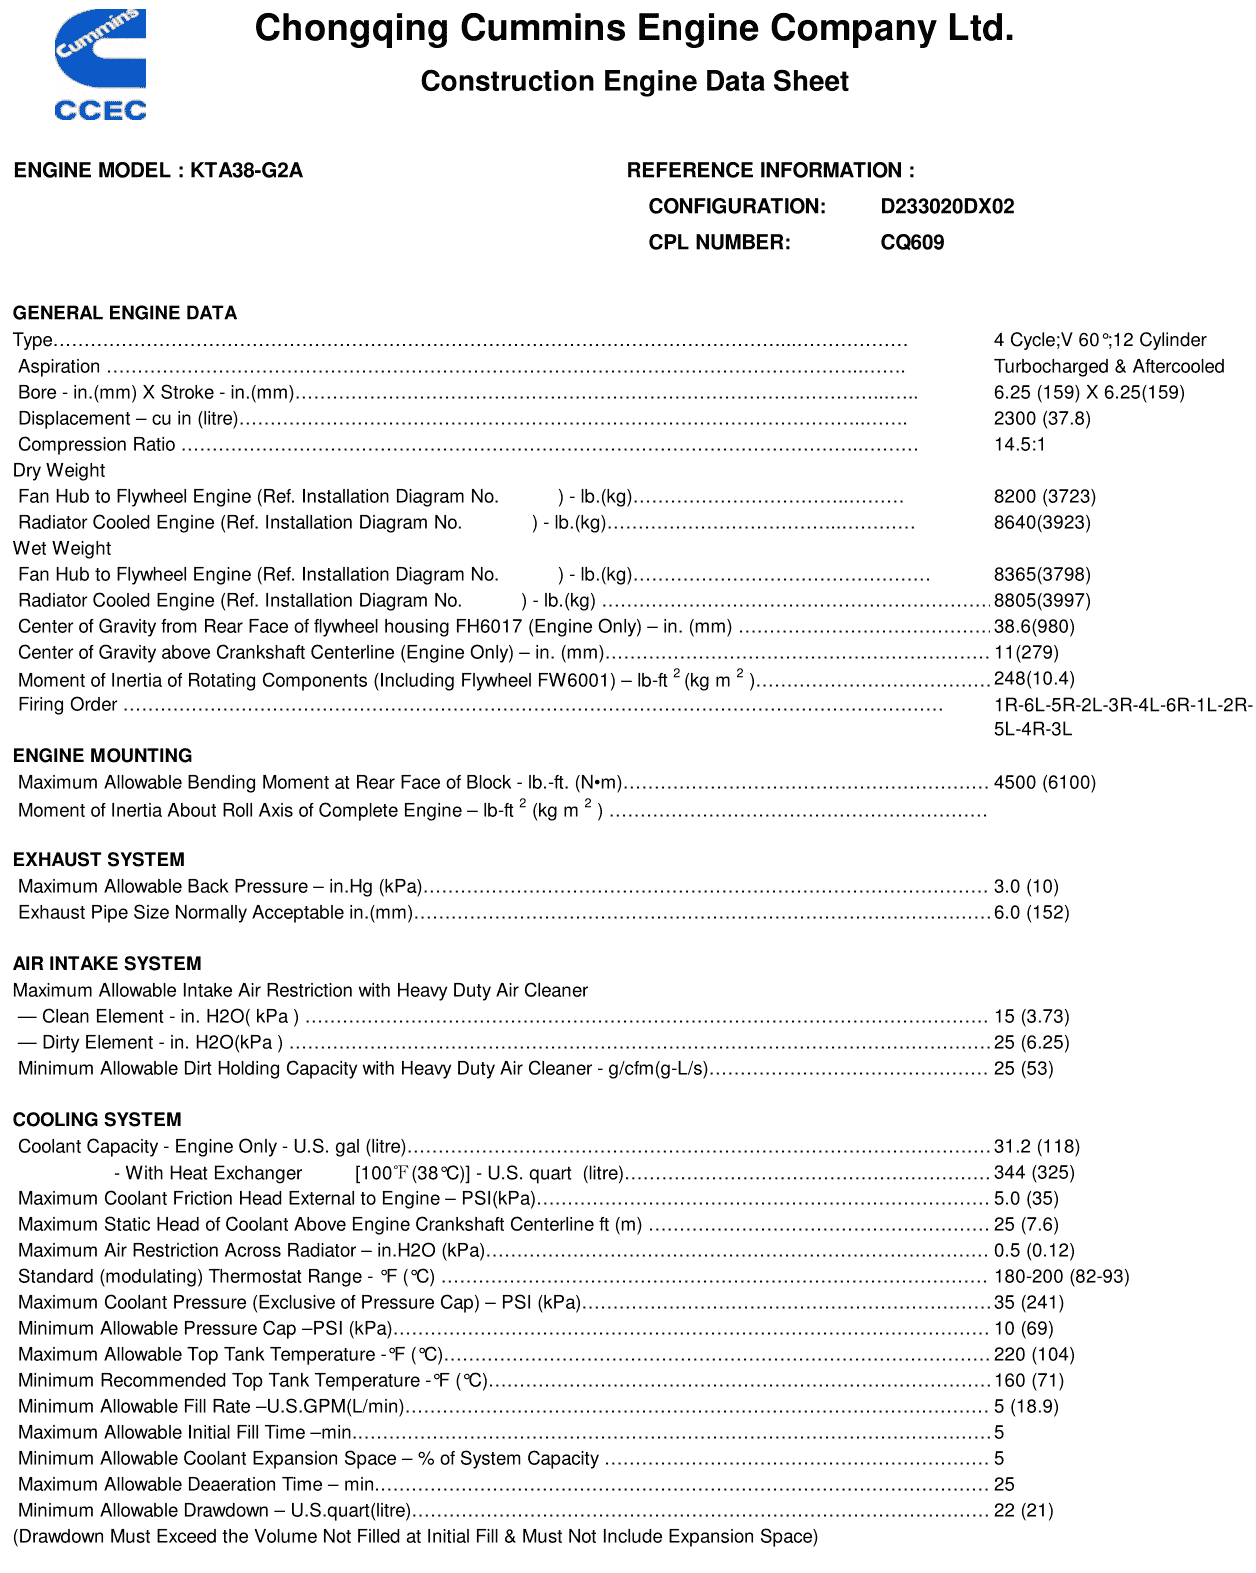 Cummins KTA38-G2A 813kW datasheet